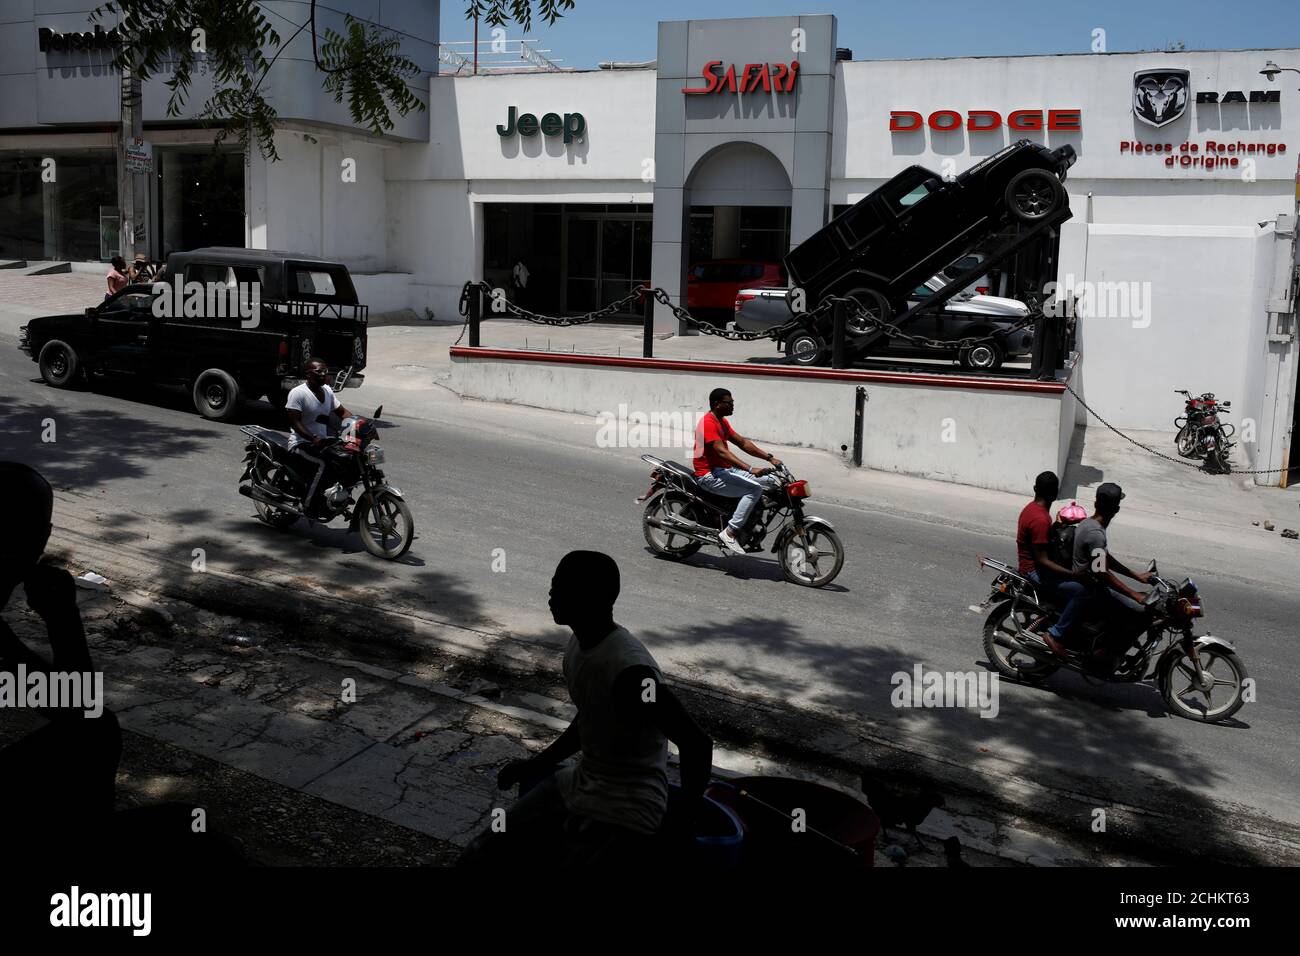 Les motos sont passées devant un magasin de voitures Porsche, Jeep, Dodge,  RAM à Port-au-Prince, Haïti, le 10 avril 2019. REUTERS/Andres Martinez  Casares Photo Stock - Alamy